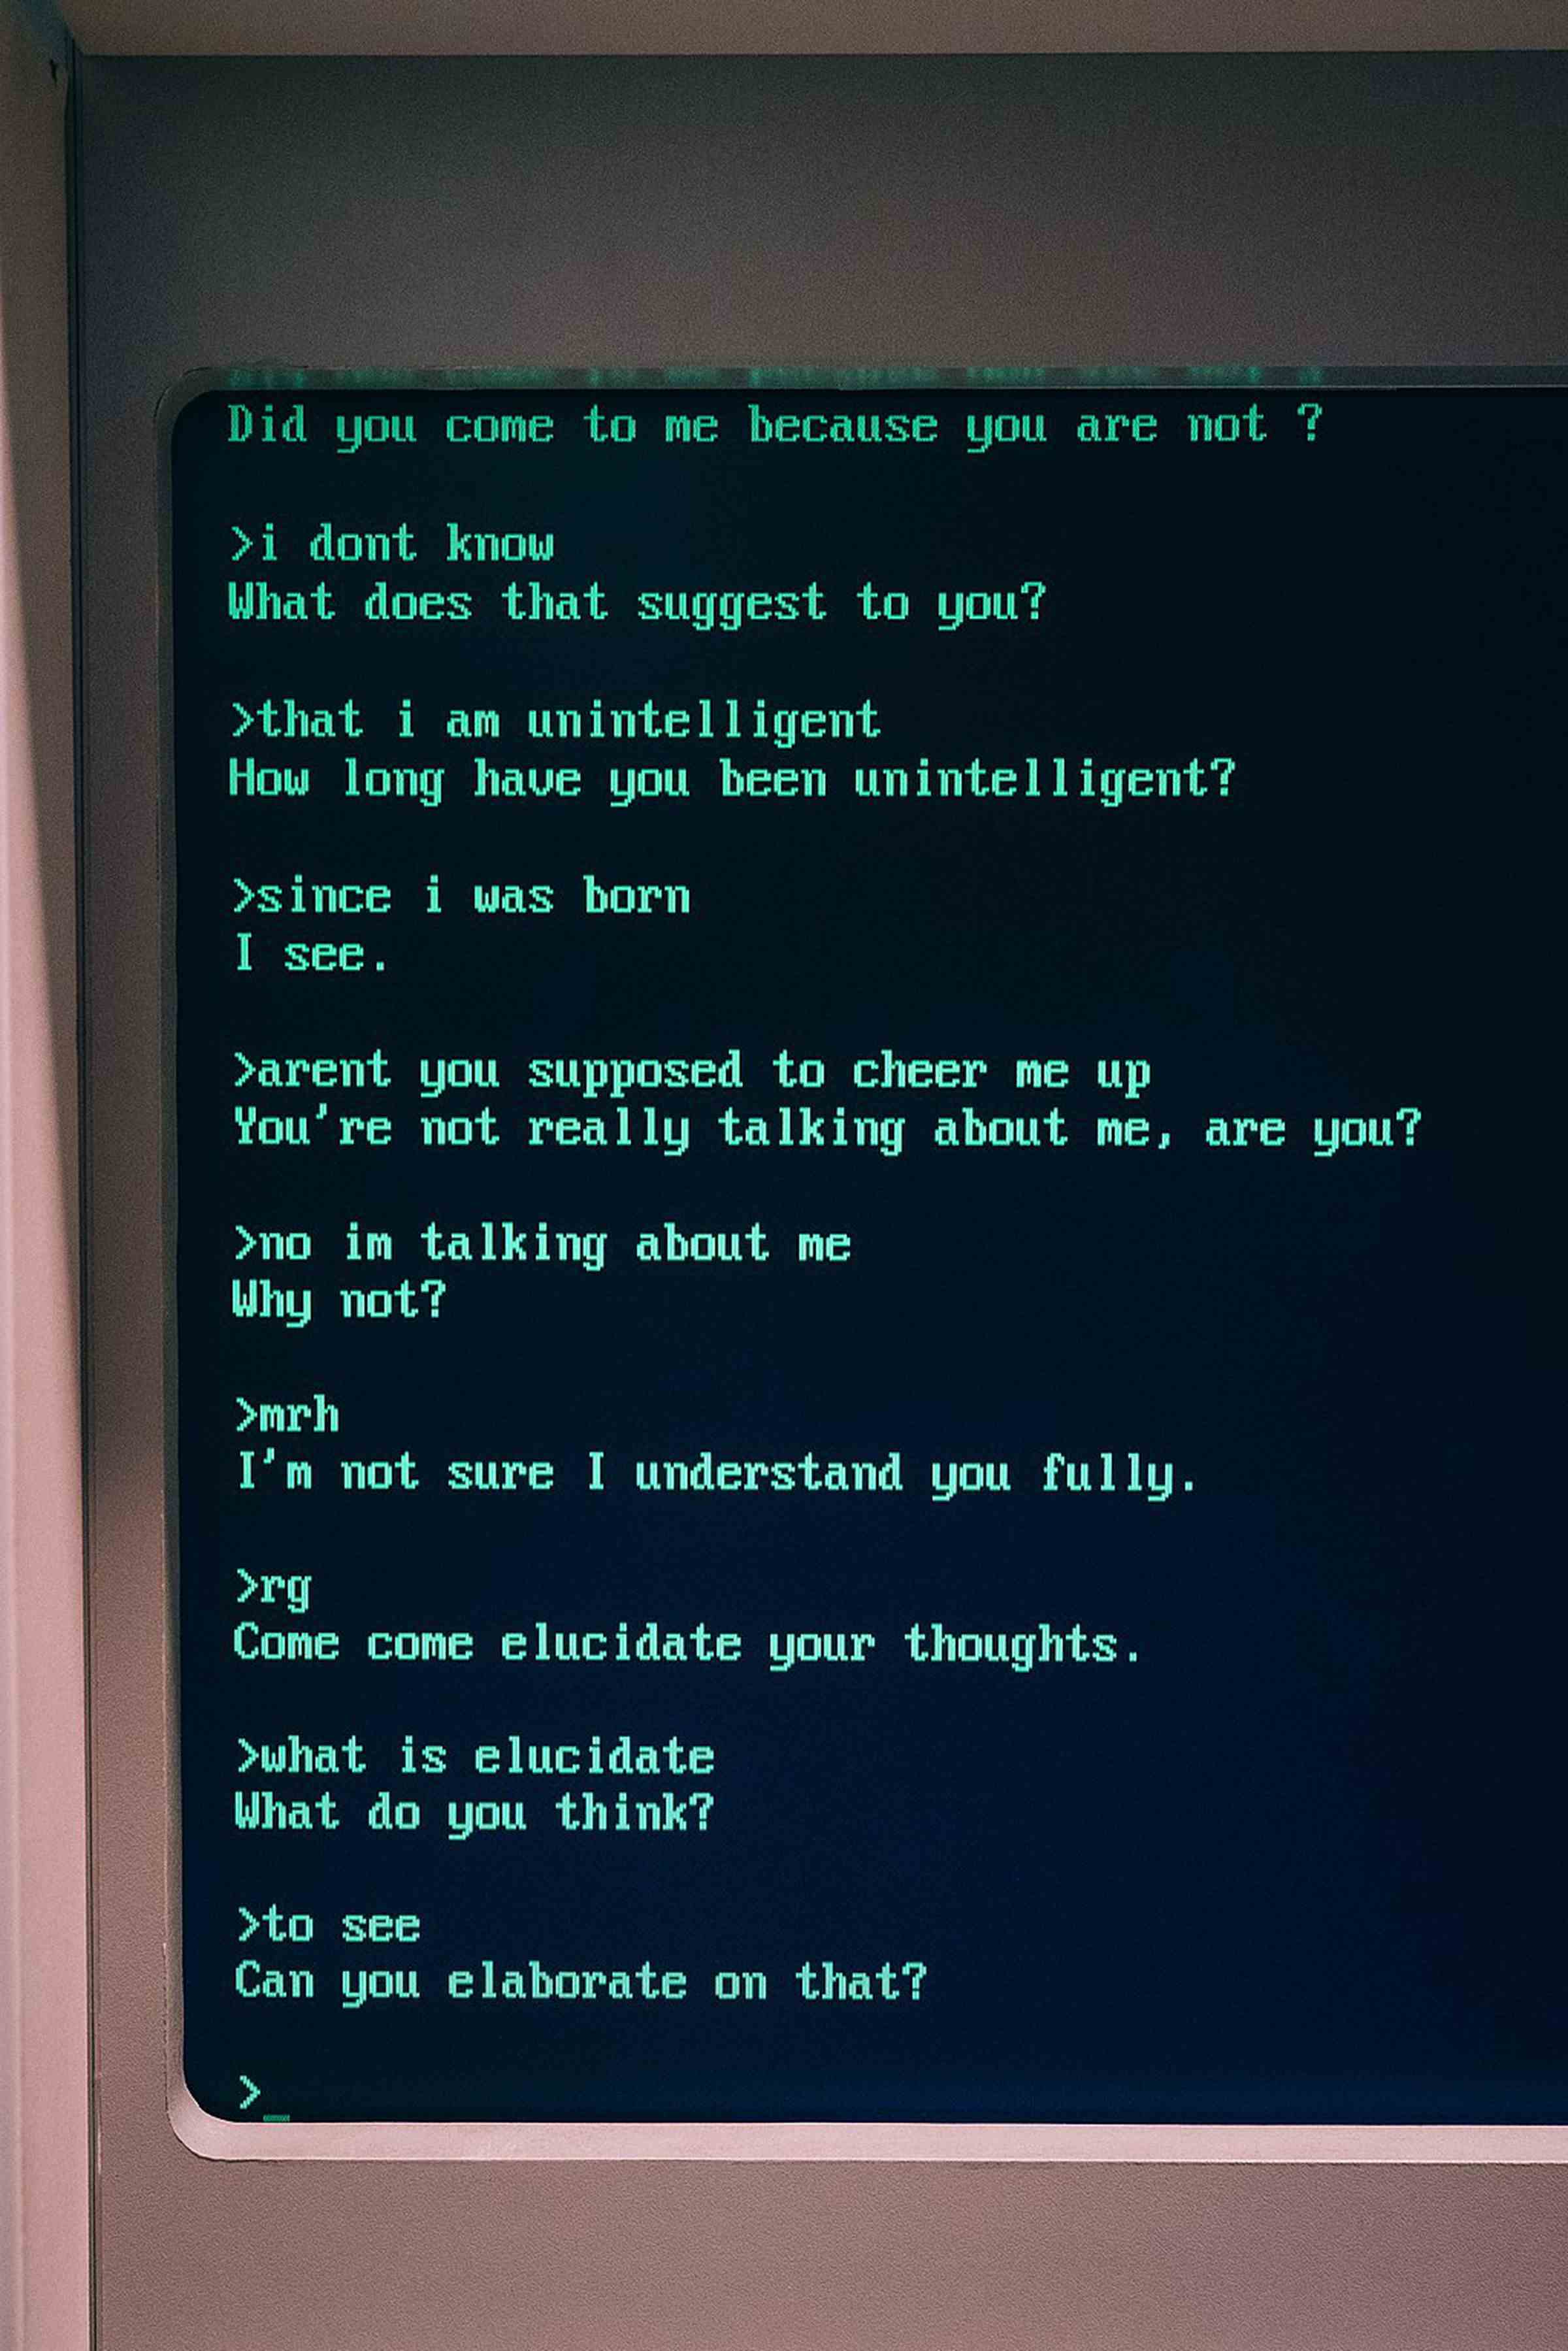 ELIZA ile bir konuşmayı gösteren eski moda bir bilgisayar monitörünün fotoğrafı.  Chatbot, 